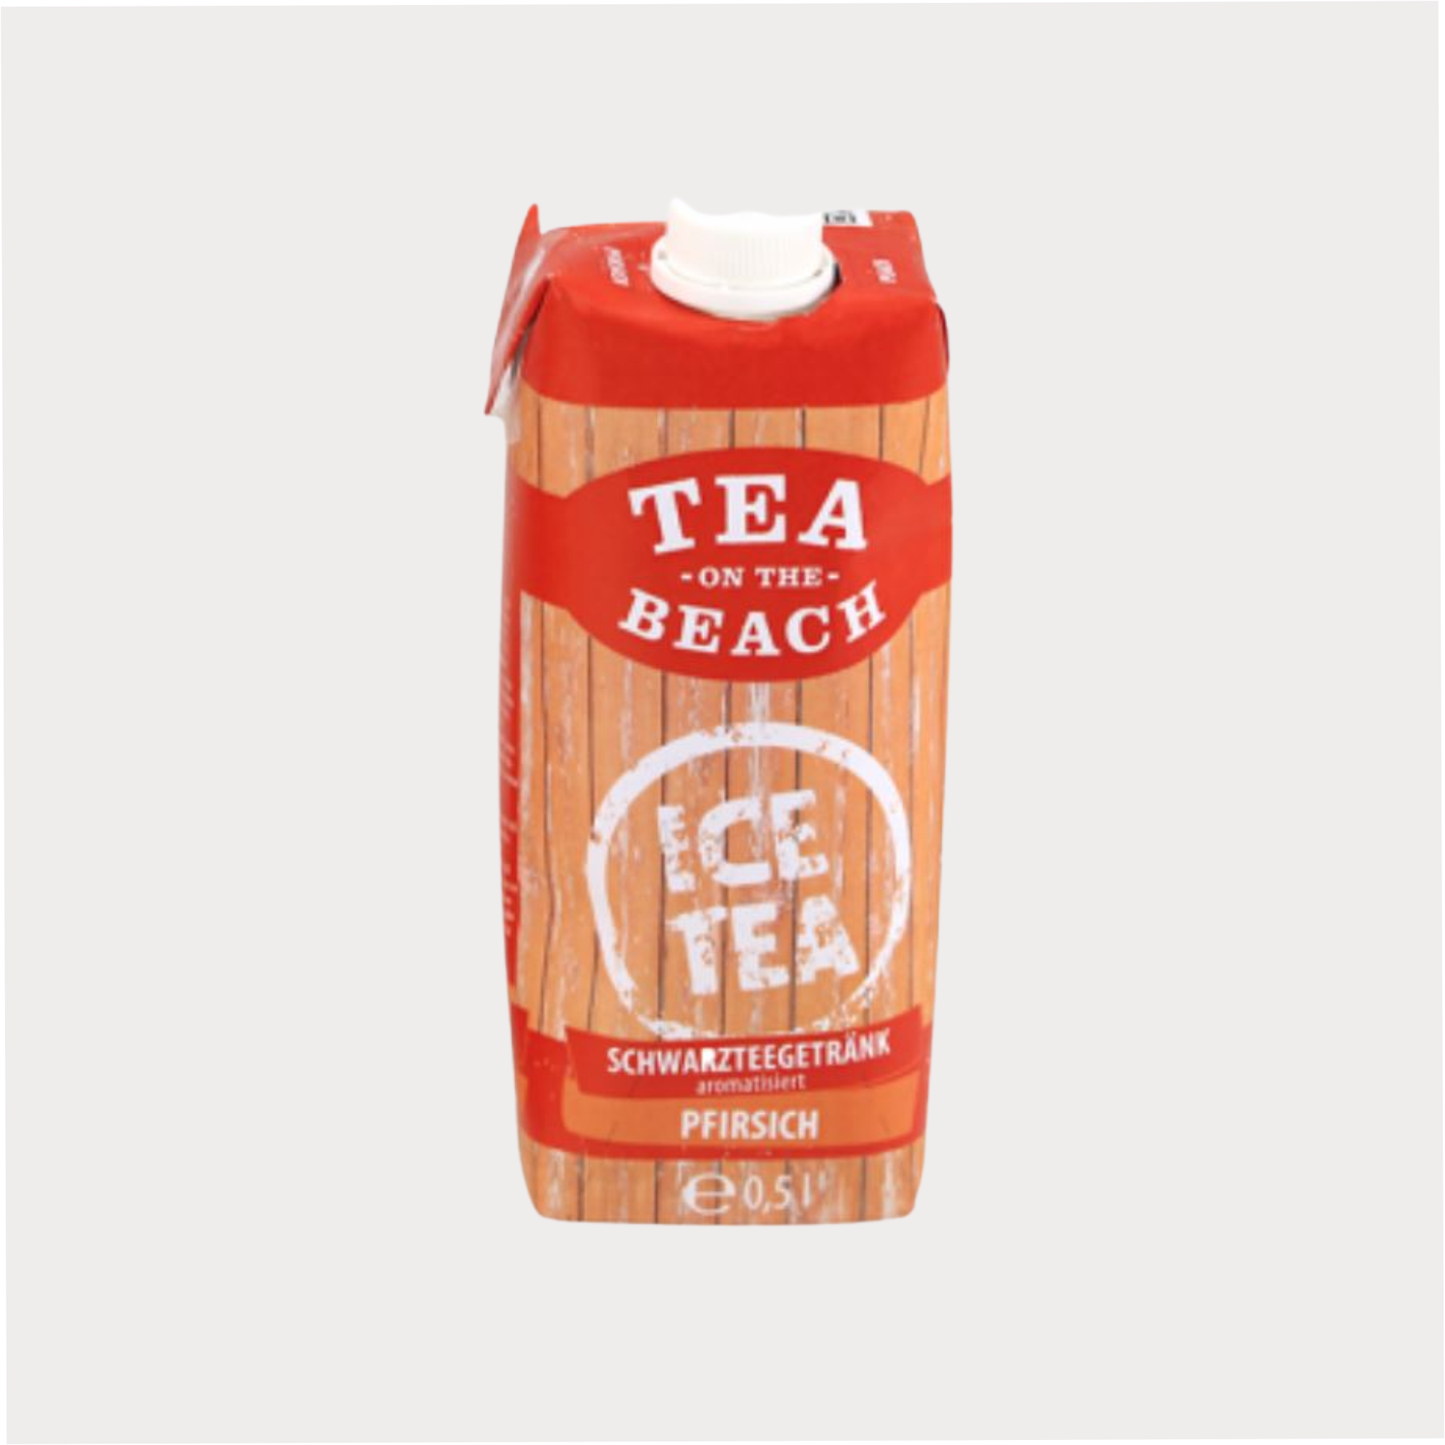 Tea on the Beach Schwarzteegetränk Pfirsich aromatisiert, 500 ml, 12 Stück